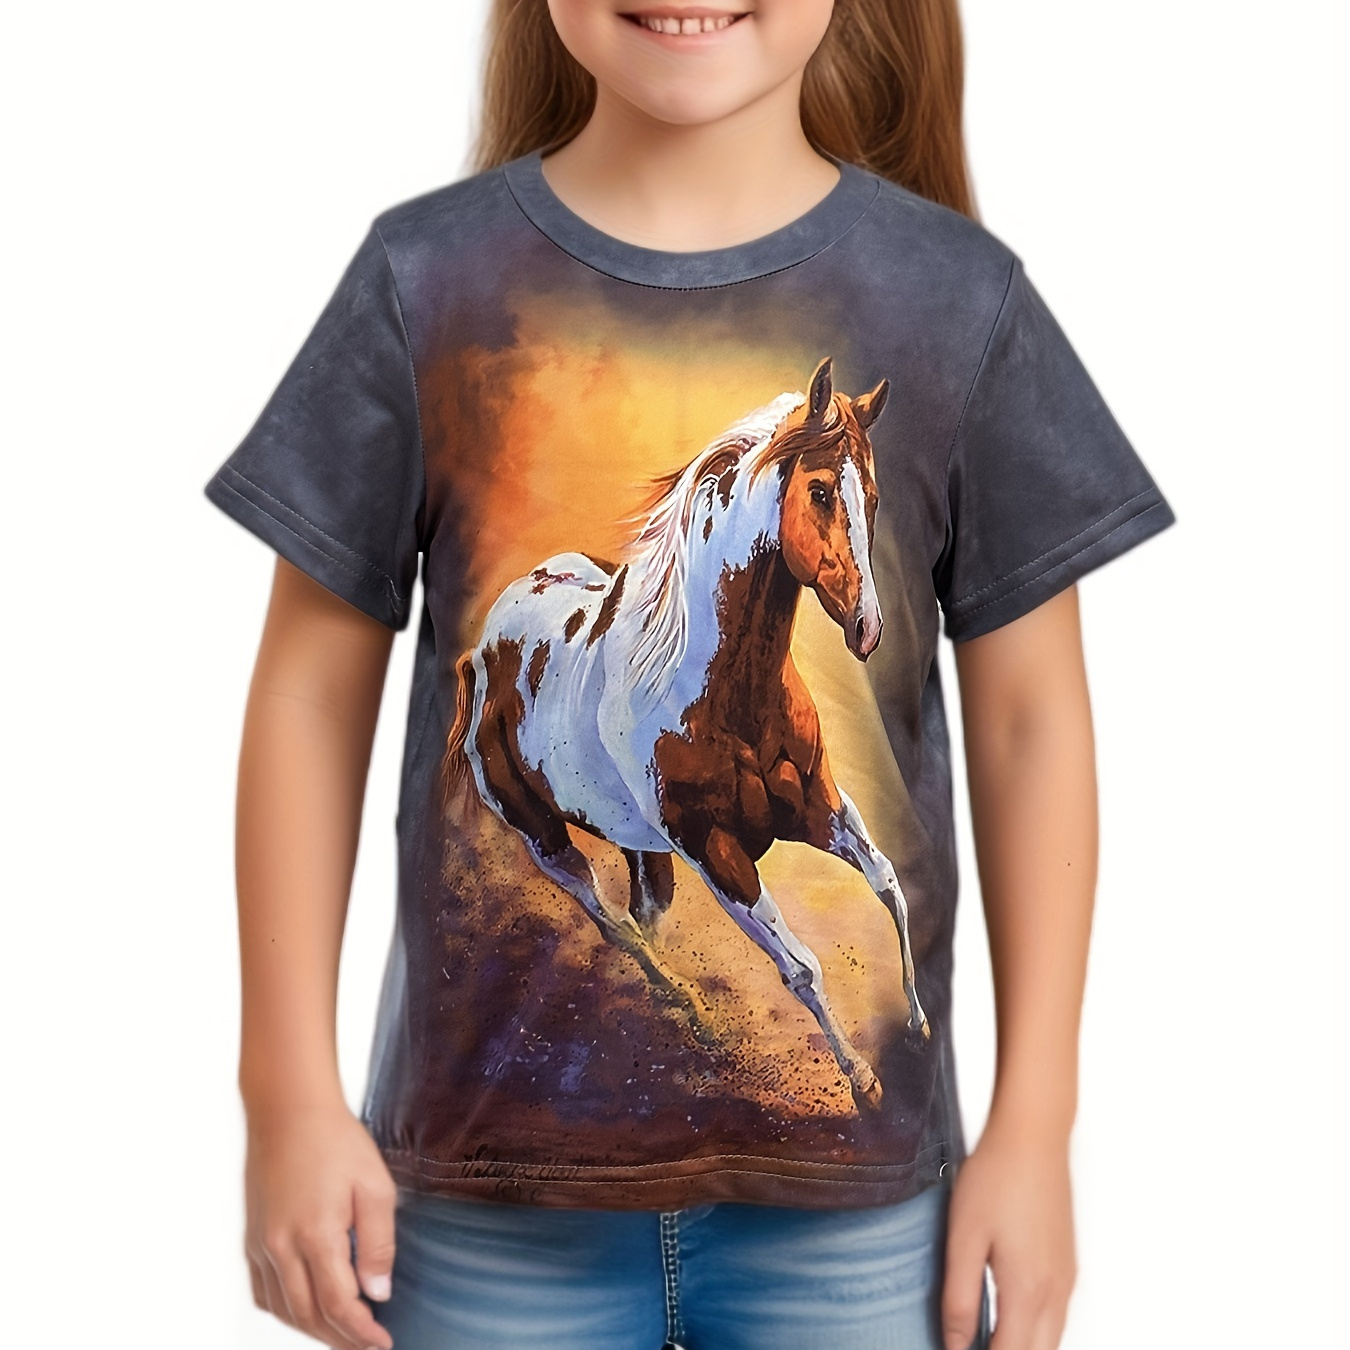 

Girls/boys Dreamy Cartoon Horse Print Short Sleeve T-shirt 3d Print Tees Summer Gift